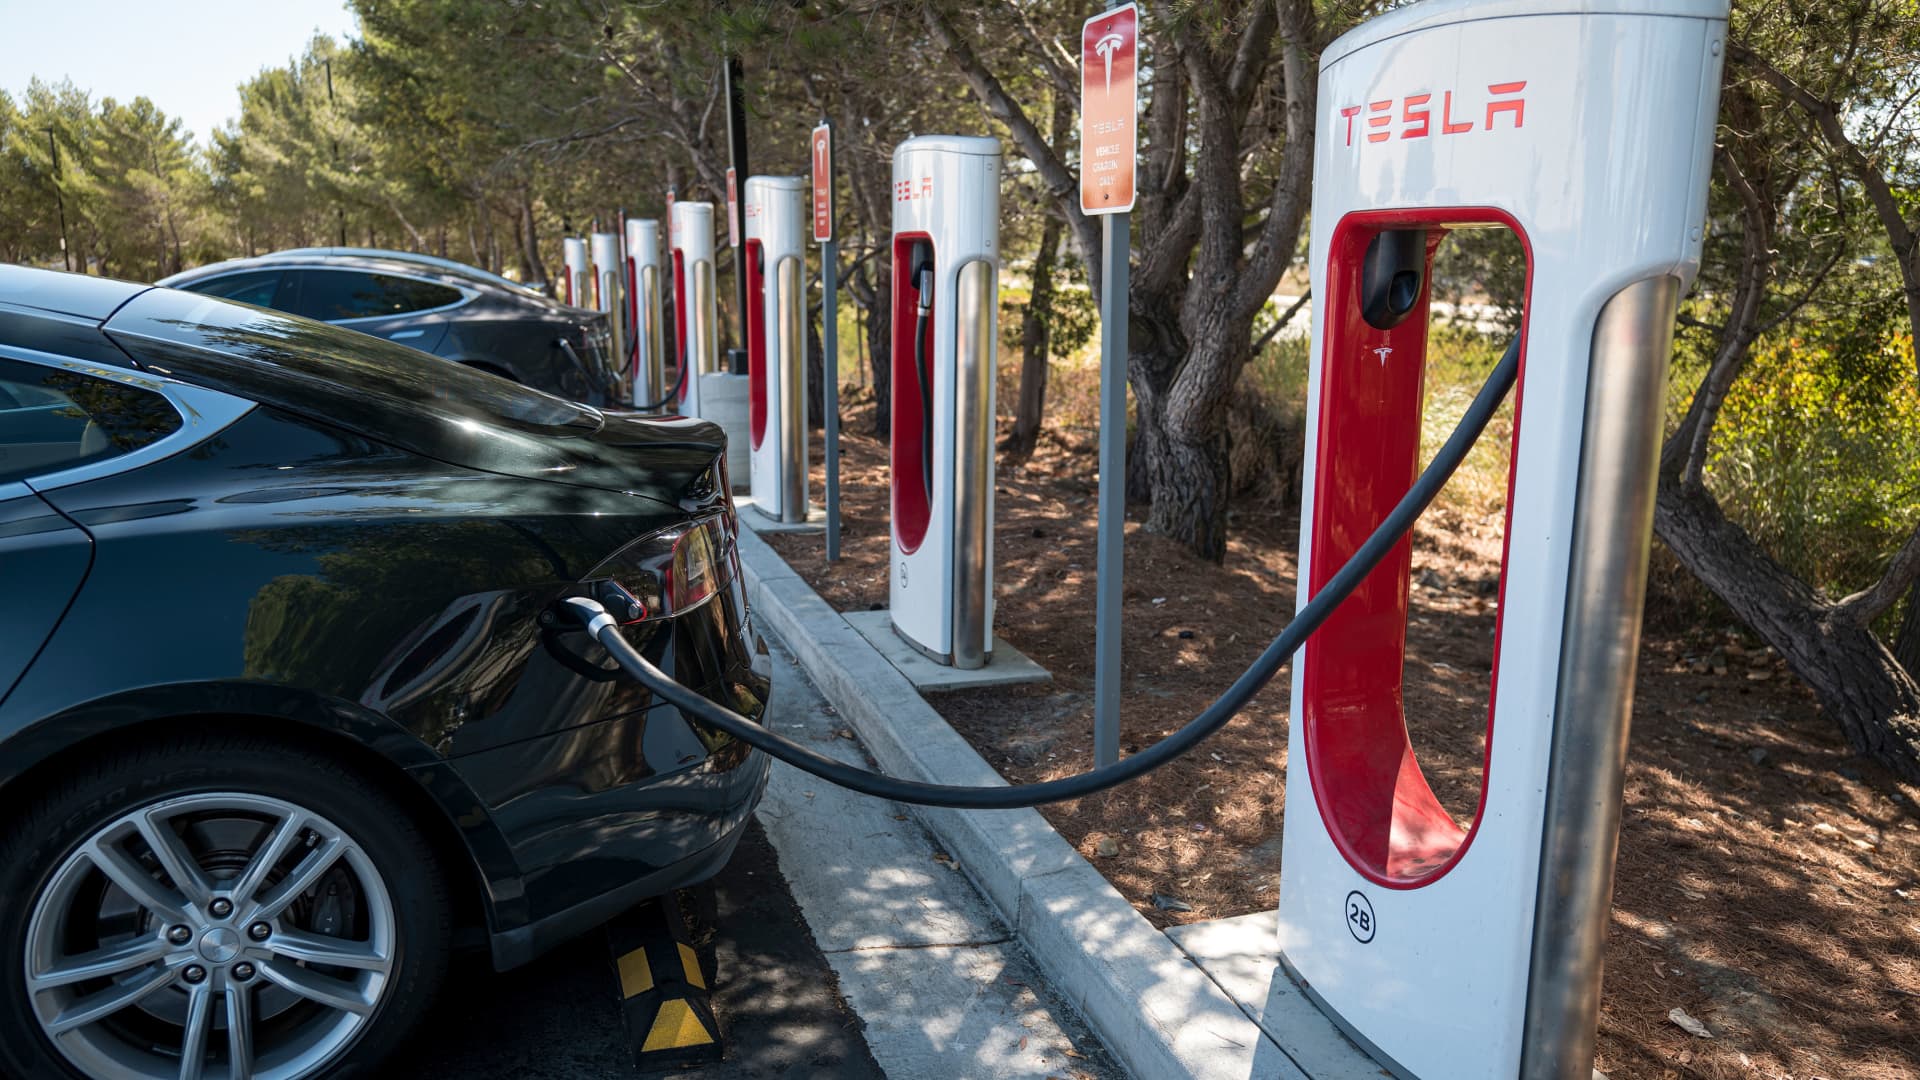 Xe điện ở Mỹ lên ngôi: VinFast thuận lợi, nhưng Tesla vừa mang đến chướng ngại cực lớn - Ảnh 1.